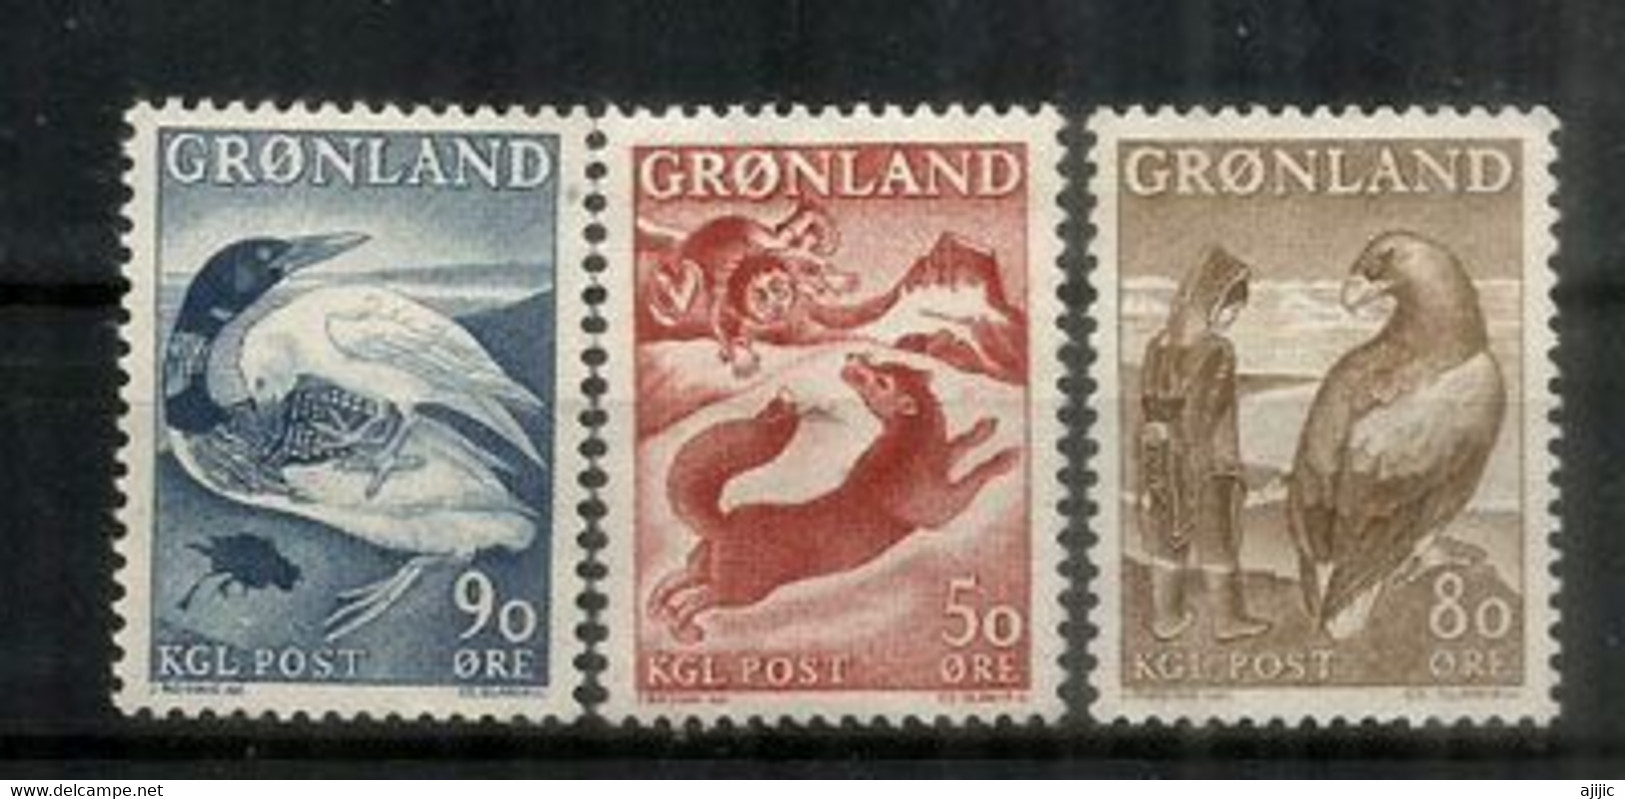 Faune Du Groenland: Renard Arctique,le Plongeon Arctique & L'Aigle Royal. 3 Timbres Neufs ** Du Groenland , Année 1966 - Faune Arctique